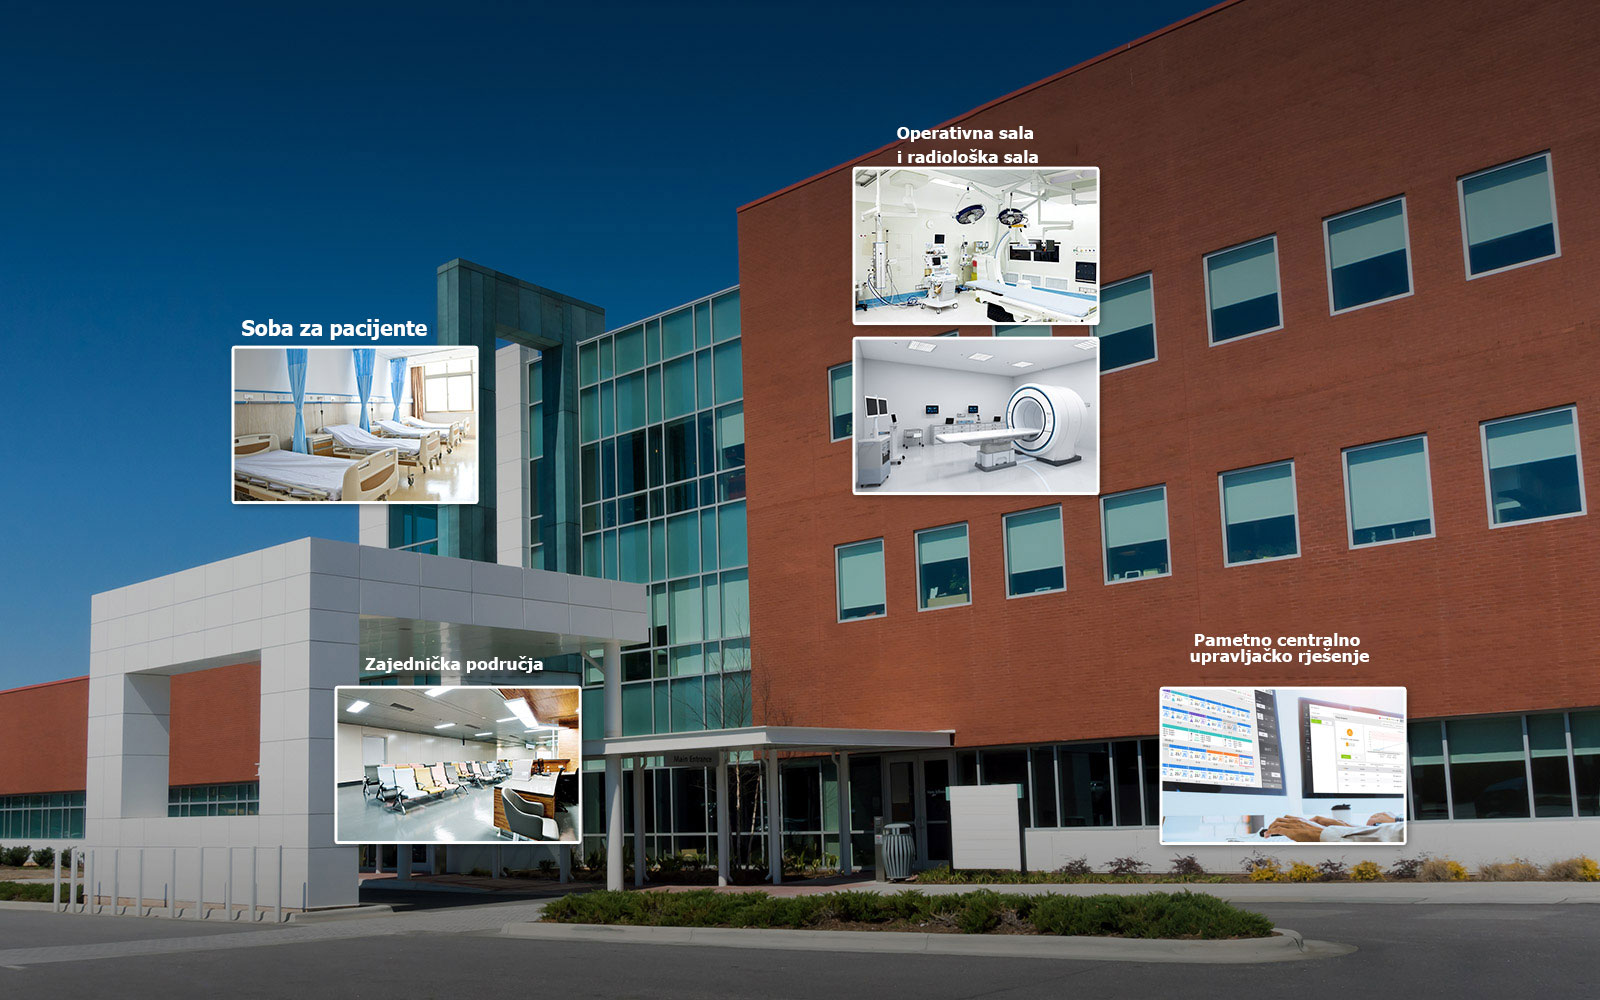 Prikaz bolnice sa sličicama prostorije za pacijente, zajedničkog prostora, operacione sale, radiološke ordinacije i kontrolnog centra.